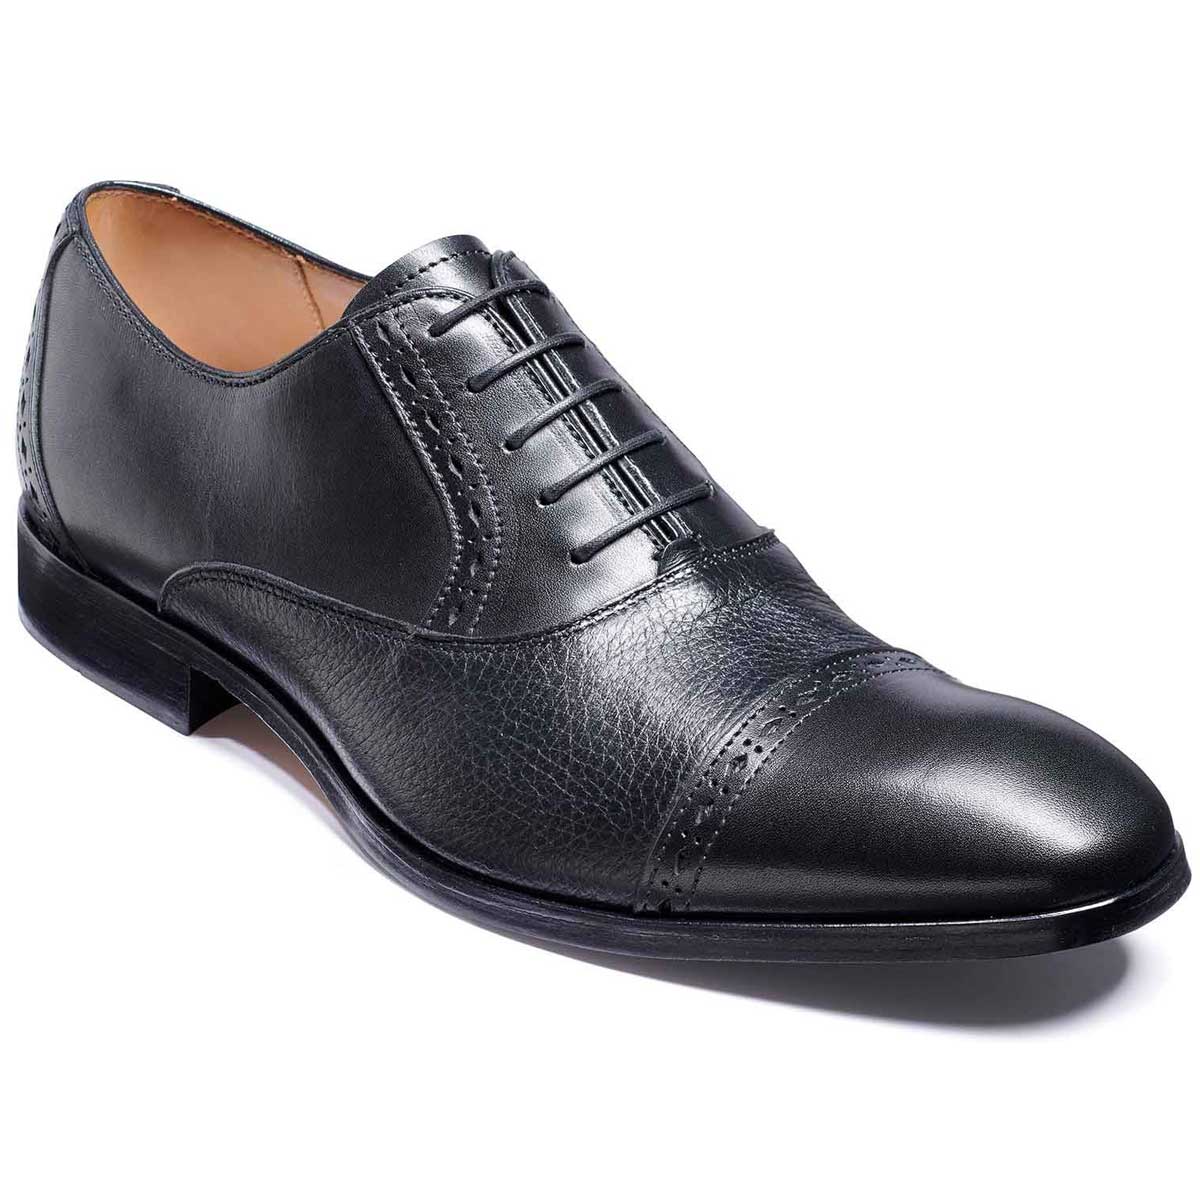 BARKER Ramsgate Shoes - Mens Oxford Toe Cap - Black Calf & Black Deerskin